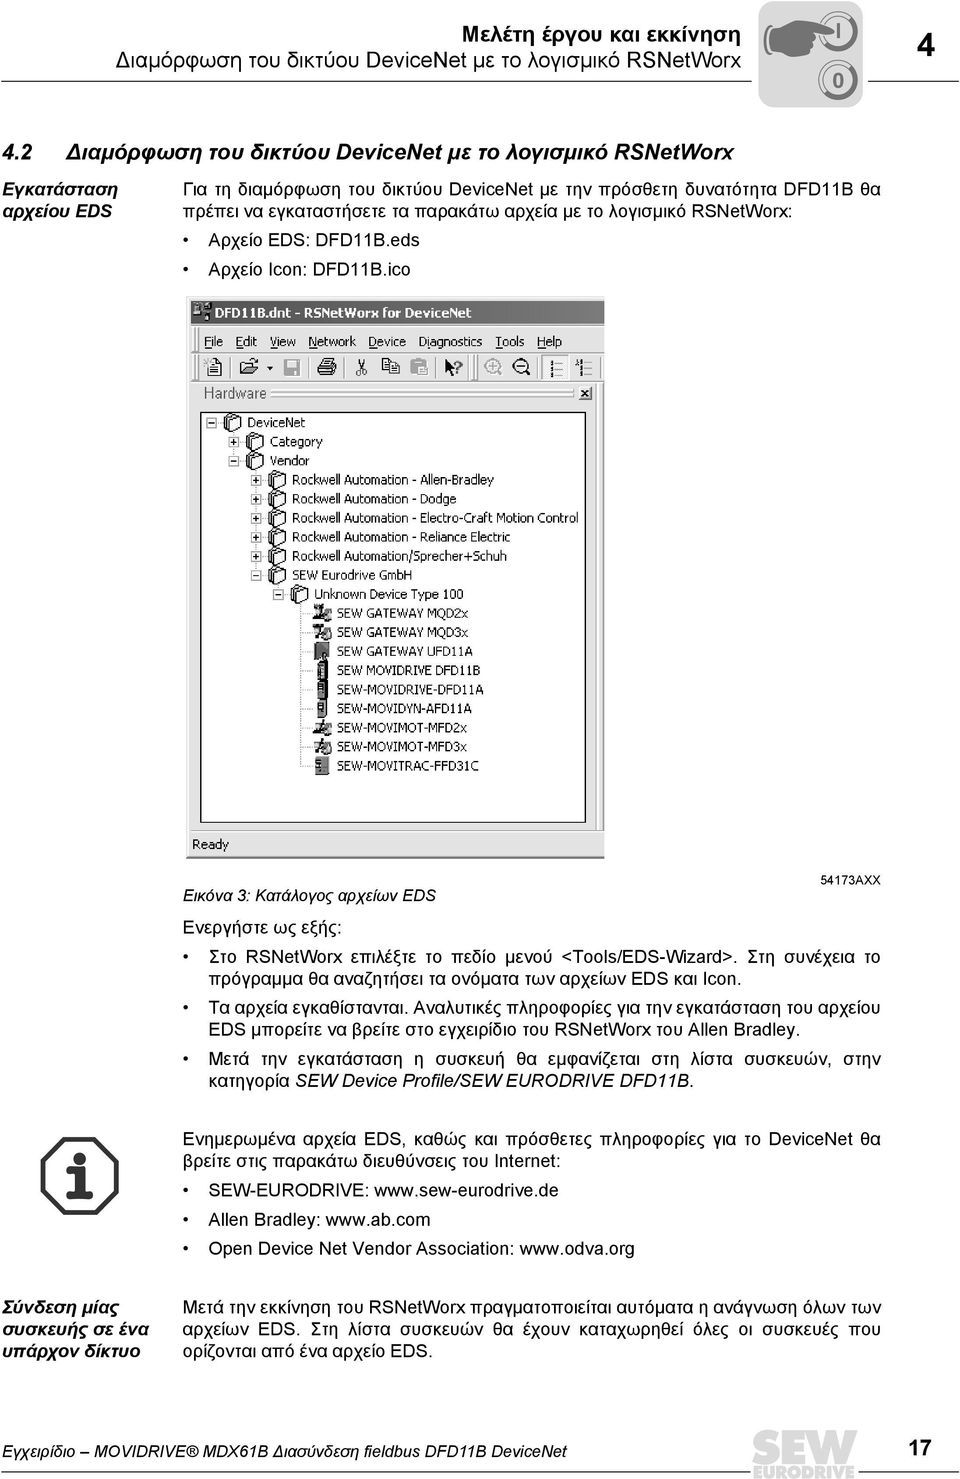 αρχεία µε το λογισµικό RSNetWorx: Αρχείο EDS: DFD11B.eds Αρχείο Icon: DFD11B.ico Εικόνα 3: Κατάλογος αρχείων EDS 54173AXX Ενεργήστε ως εξής: Στο RSNetWorx επιλέξτε το πεδίο µενού <Tools/EDS-Wizard>.